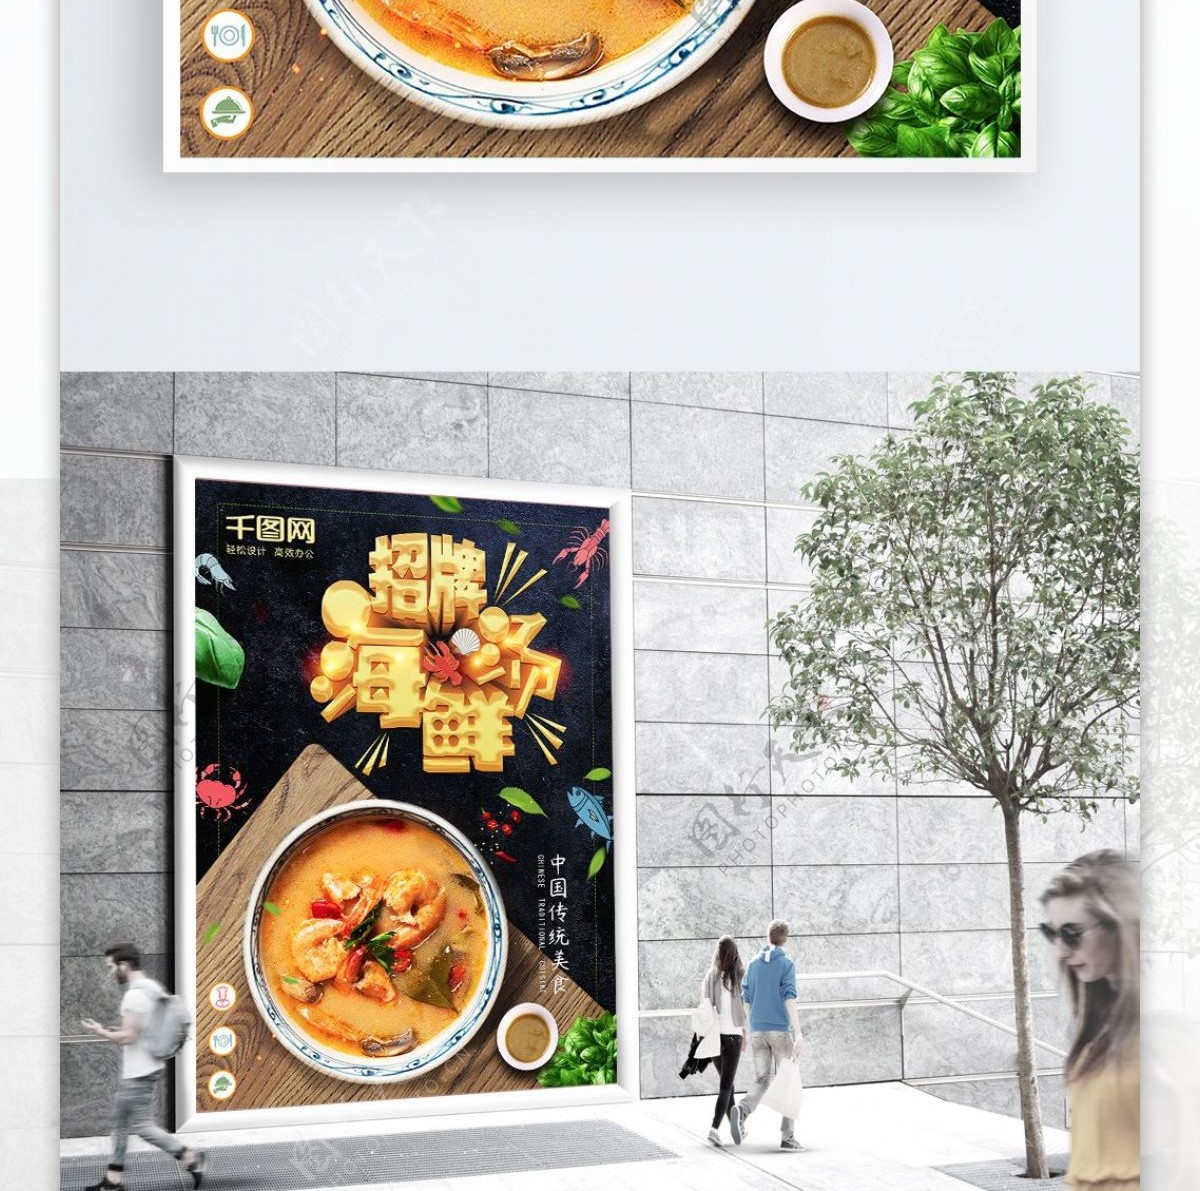 大气创意字体招牌海鲜汤美食海报